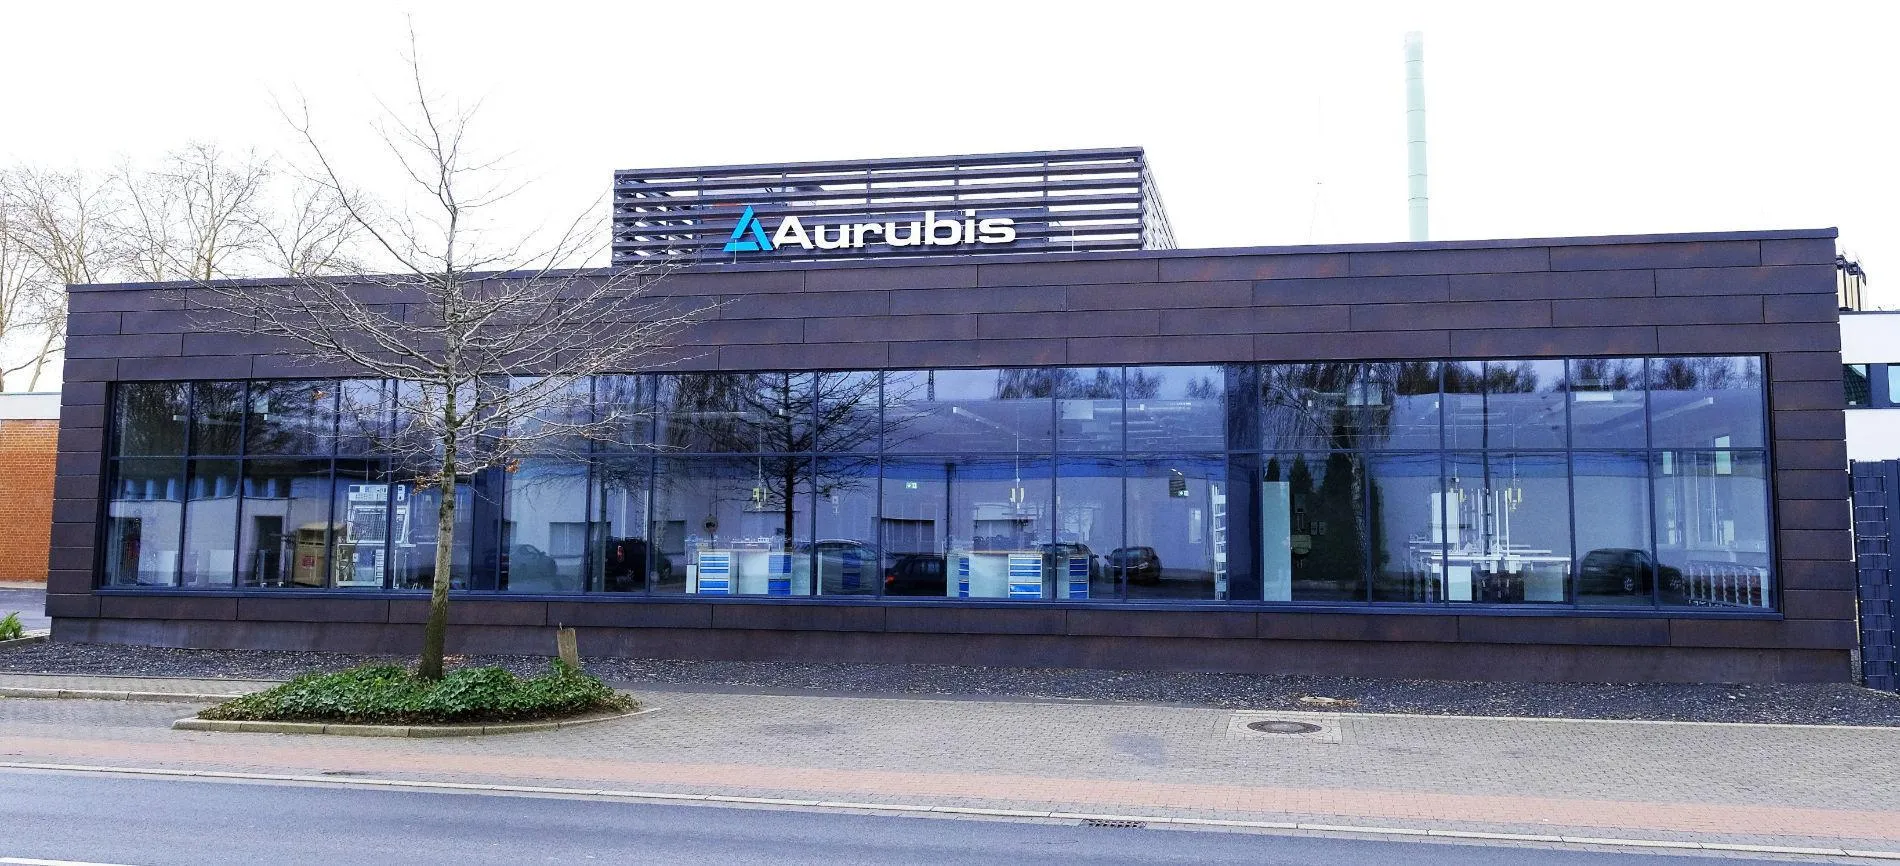 Aurubis-Gebäude mit verglaster Front